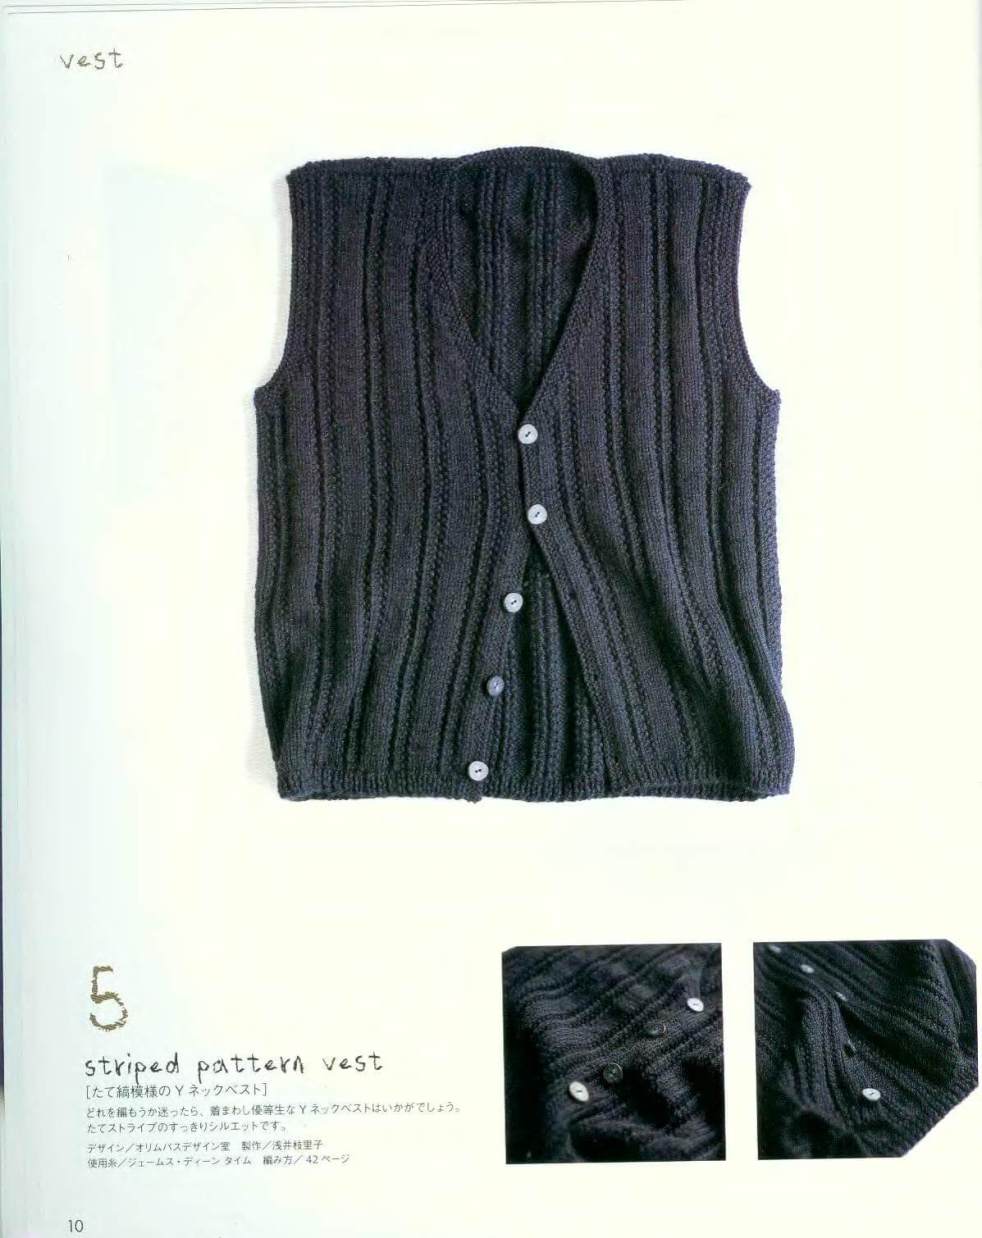 Easy Men's vest knitting pattern